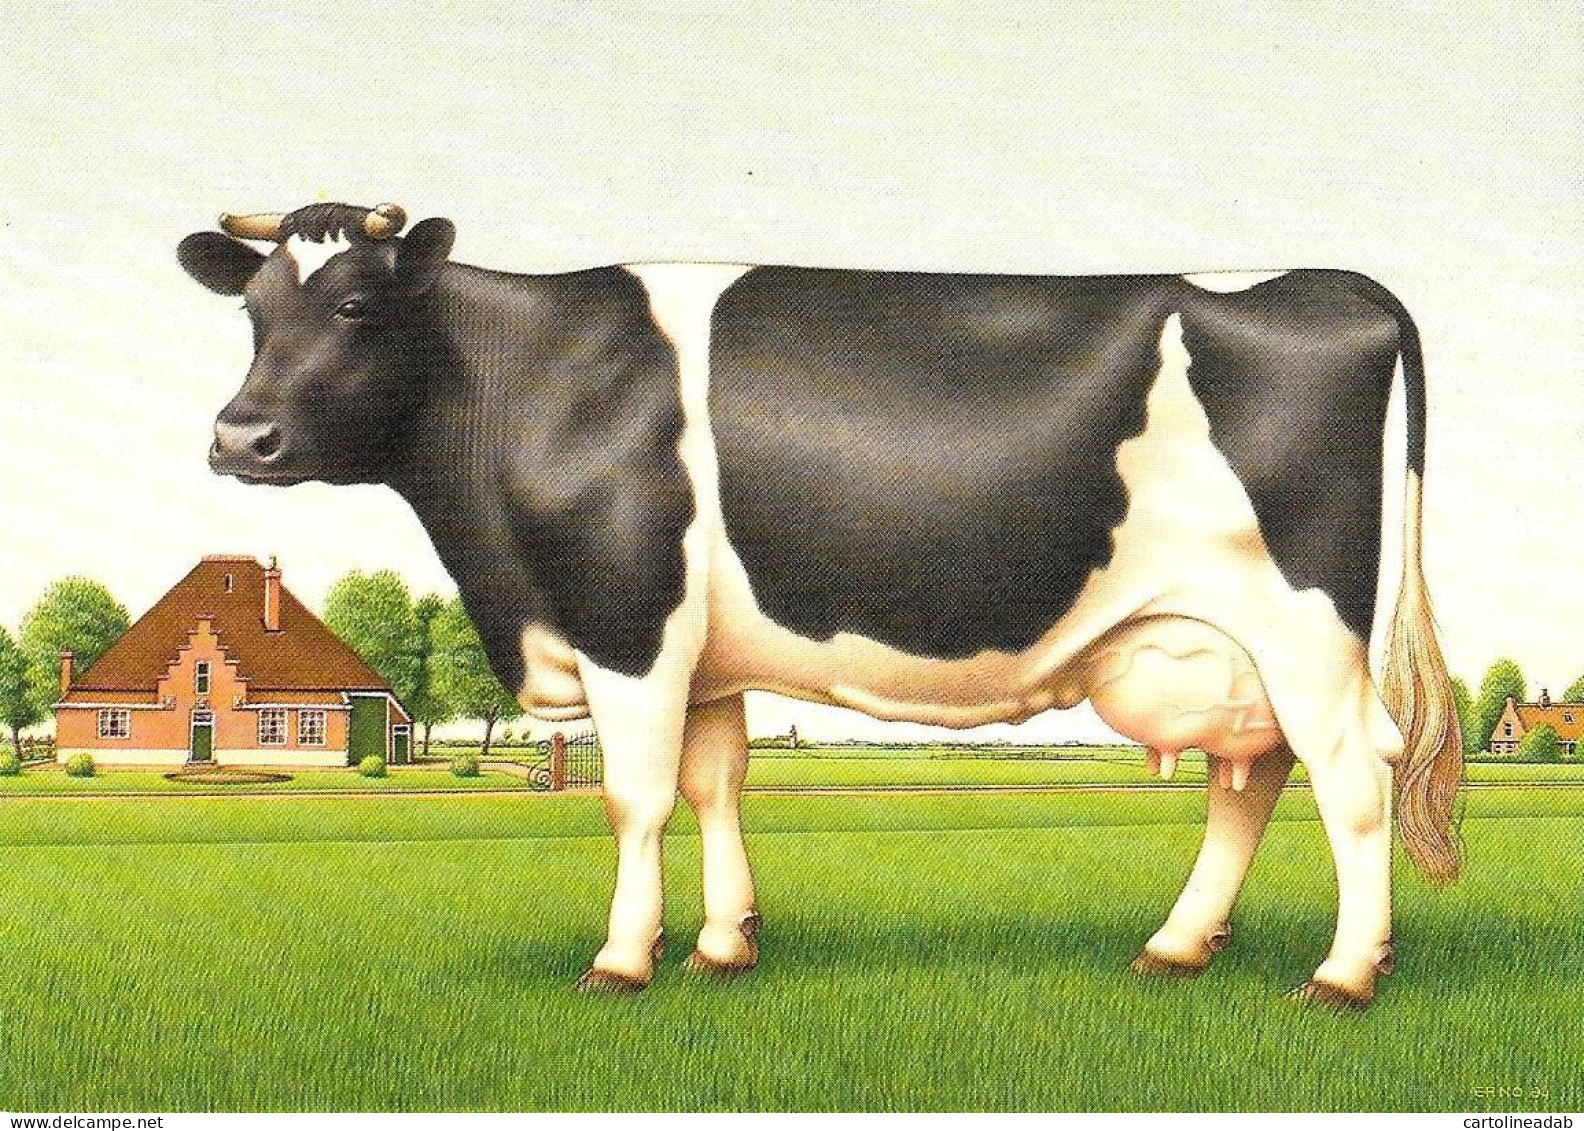 [MD9727] CPM - MUCCA - ERNO TROMP 1984 - PERFETTA - Non Viaggiata - Cows